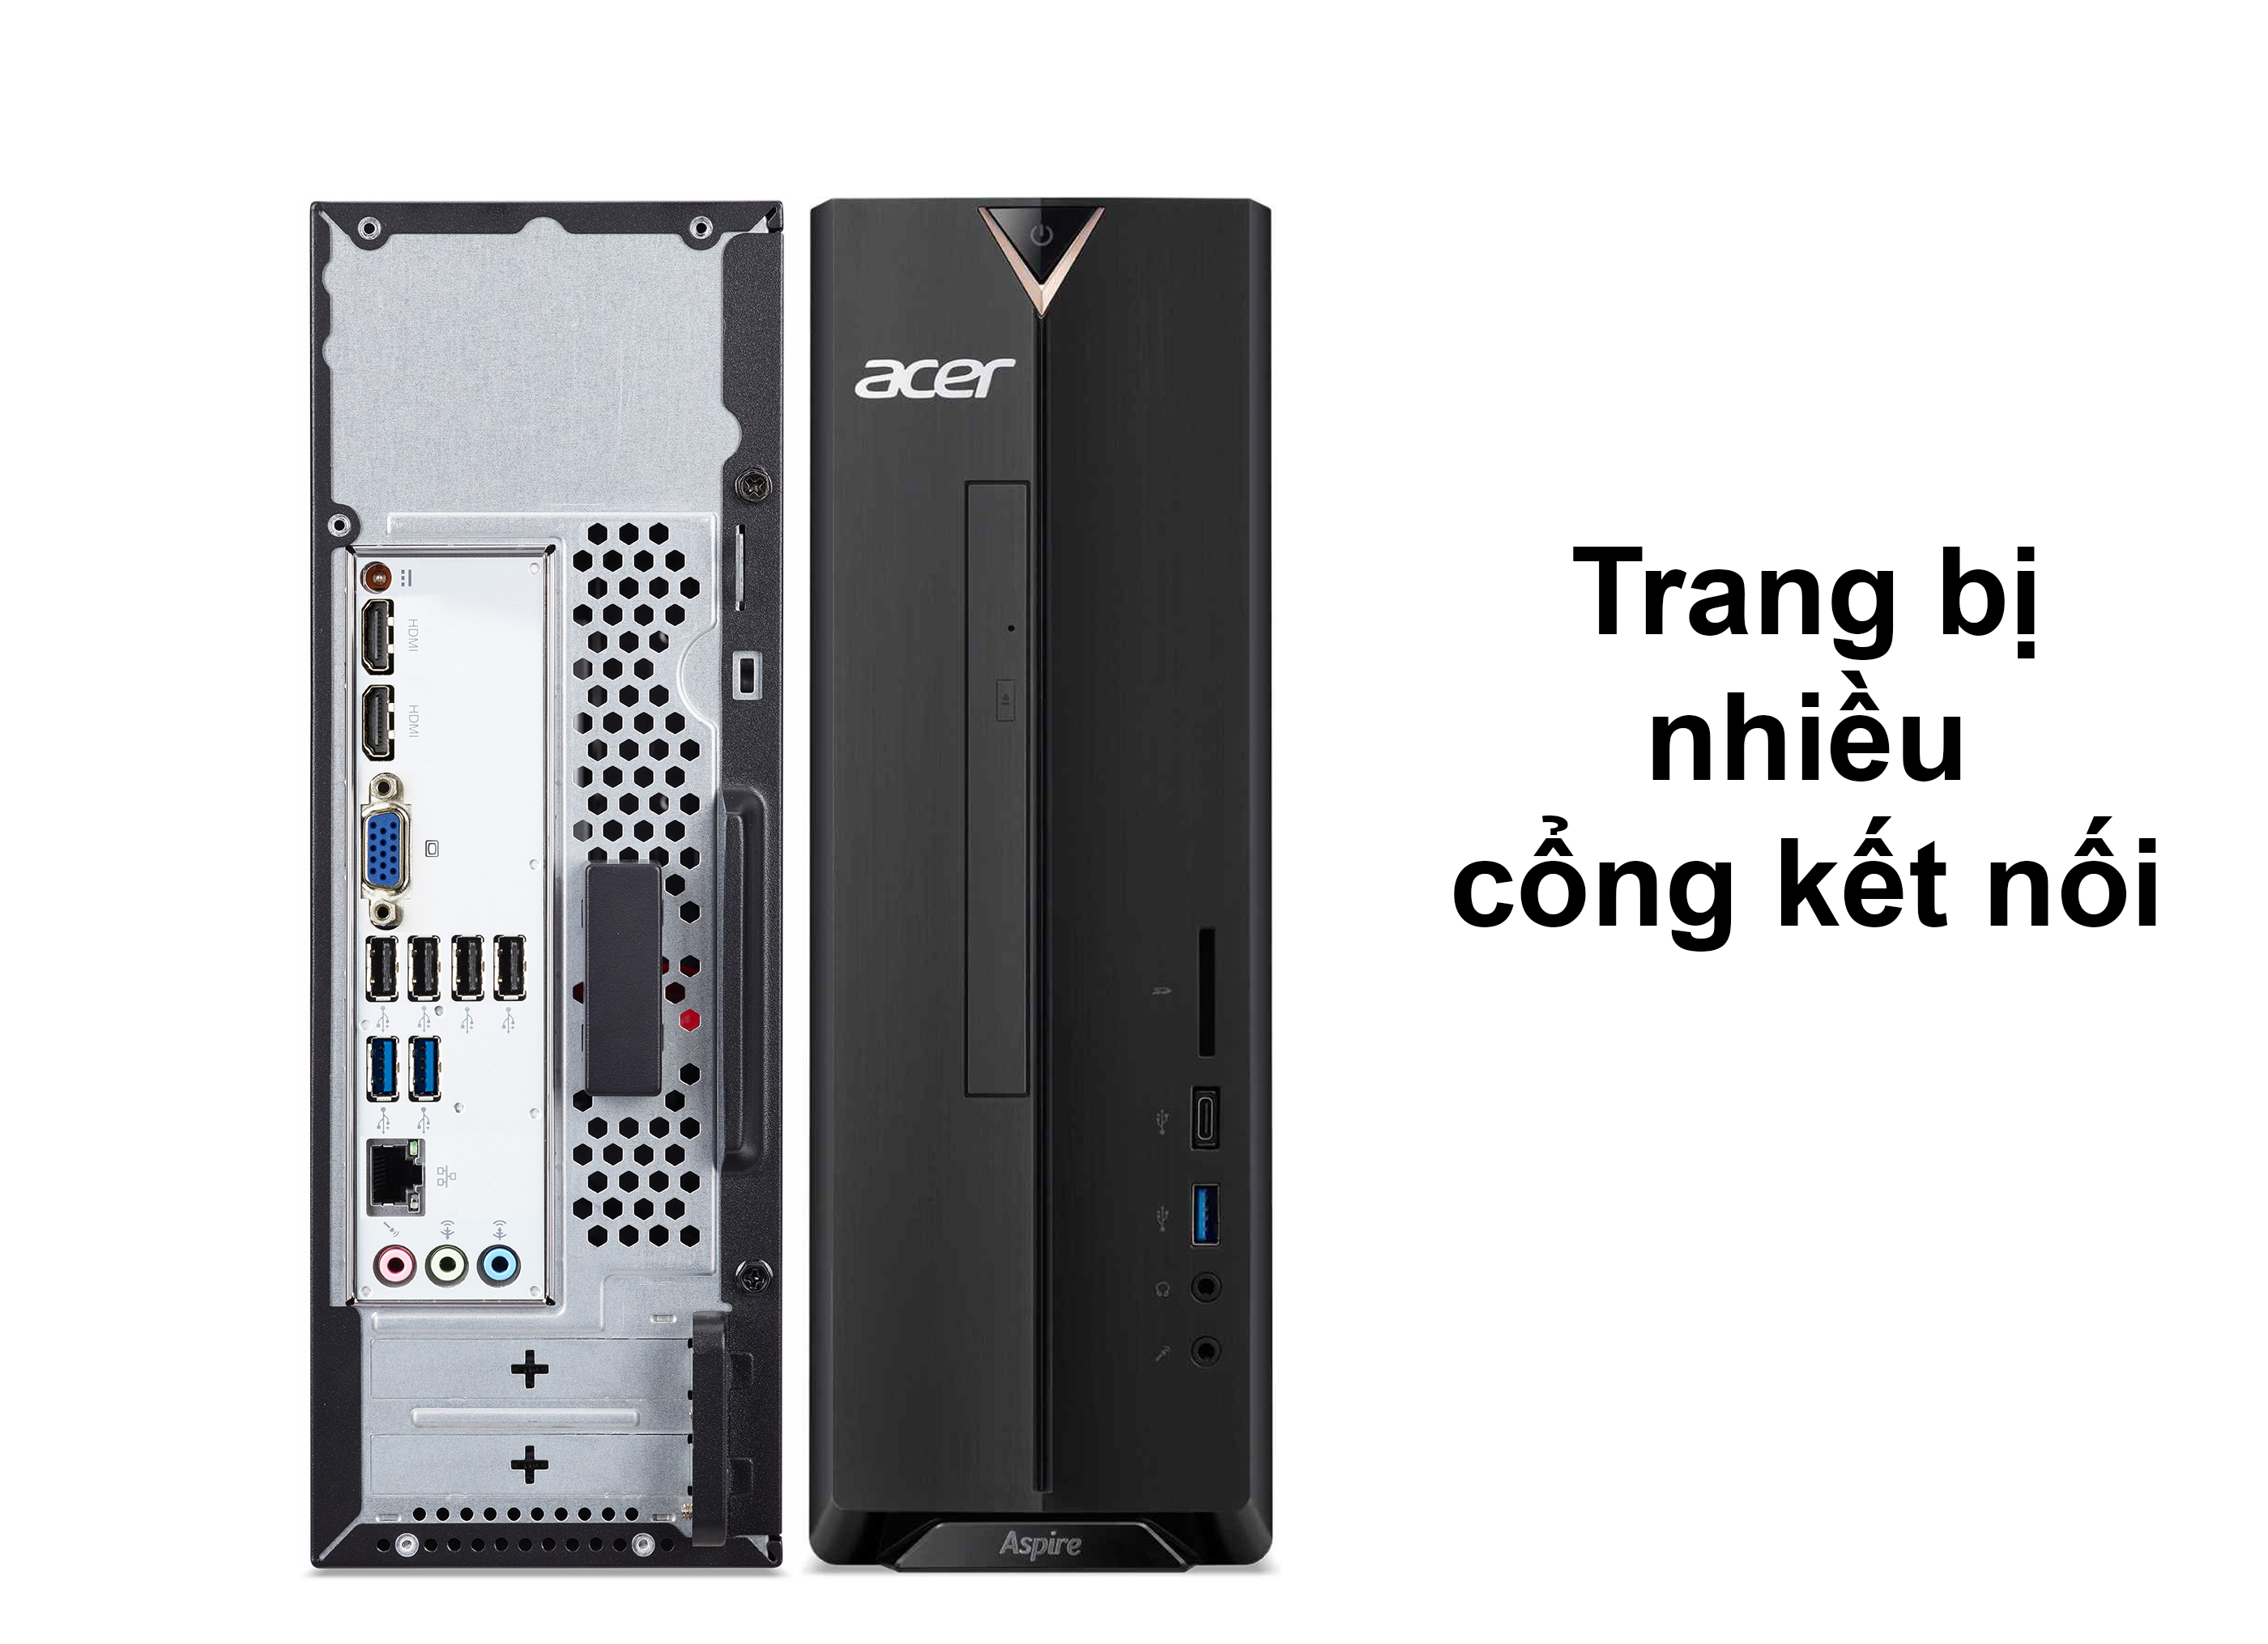 PC Acer AS XC-895 | Trang bị nhiều cổng kết nối